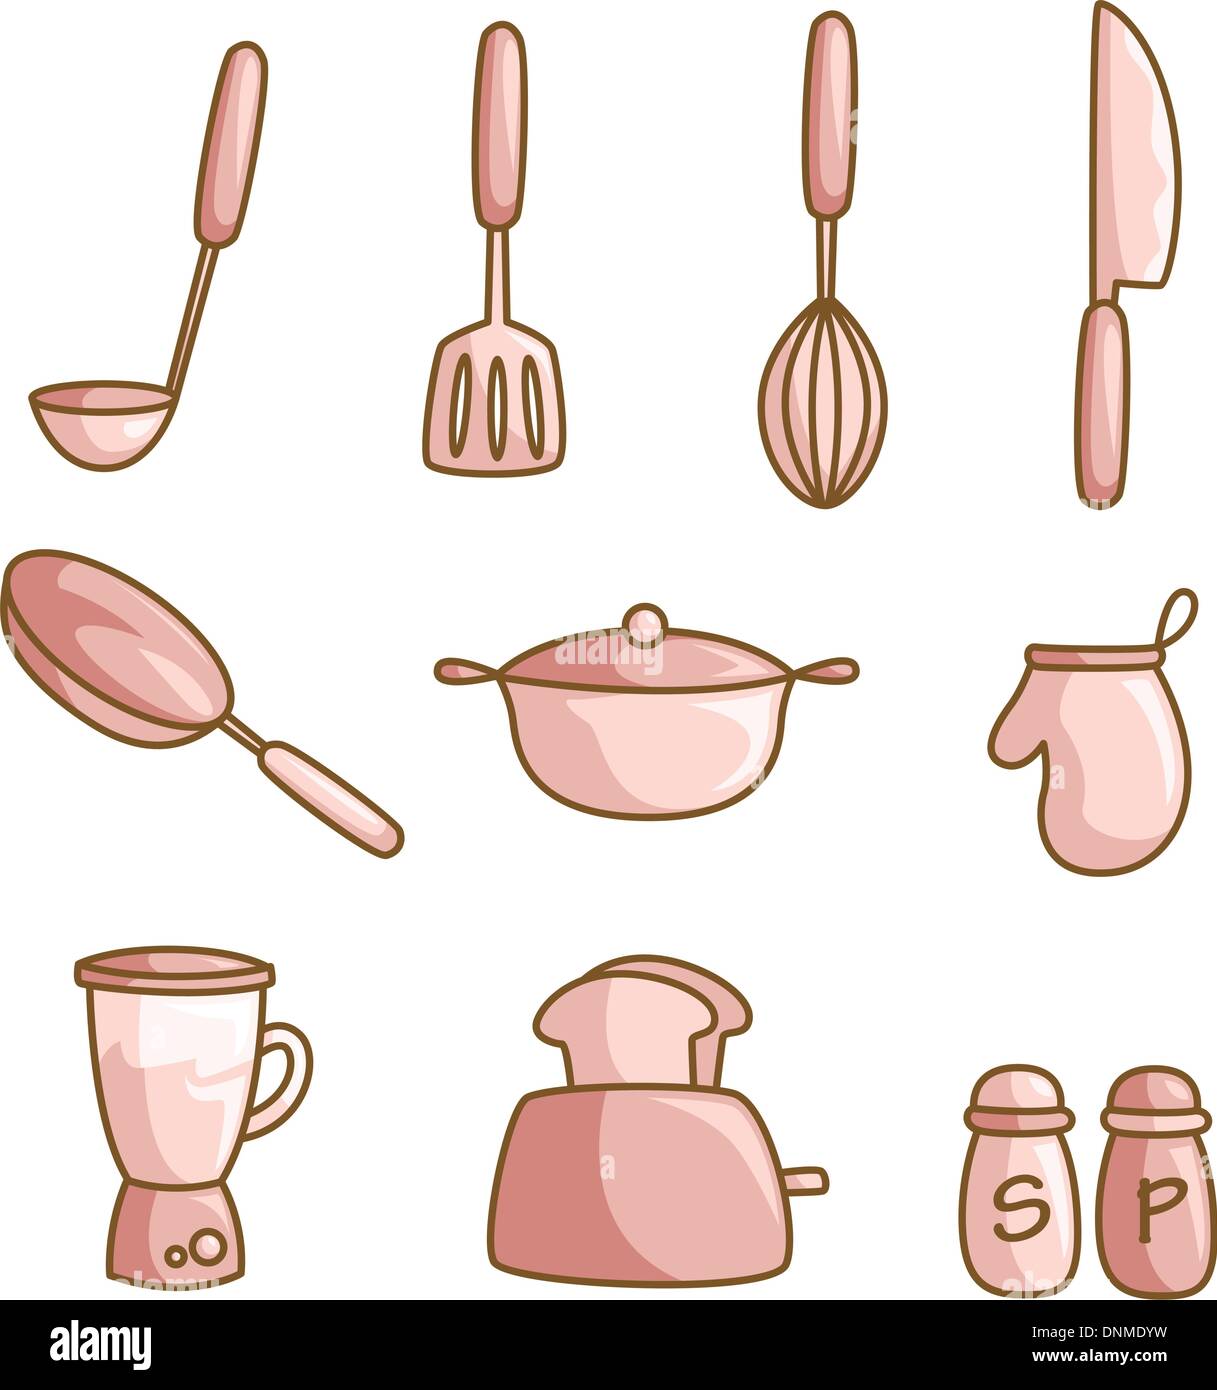 Eine Vektor-Illustration aus einer Reihe von Kochutensilien Stock Vektor